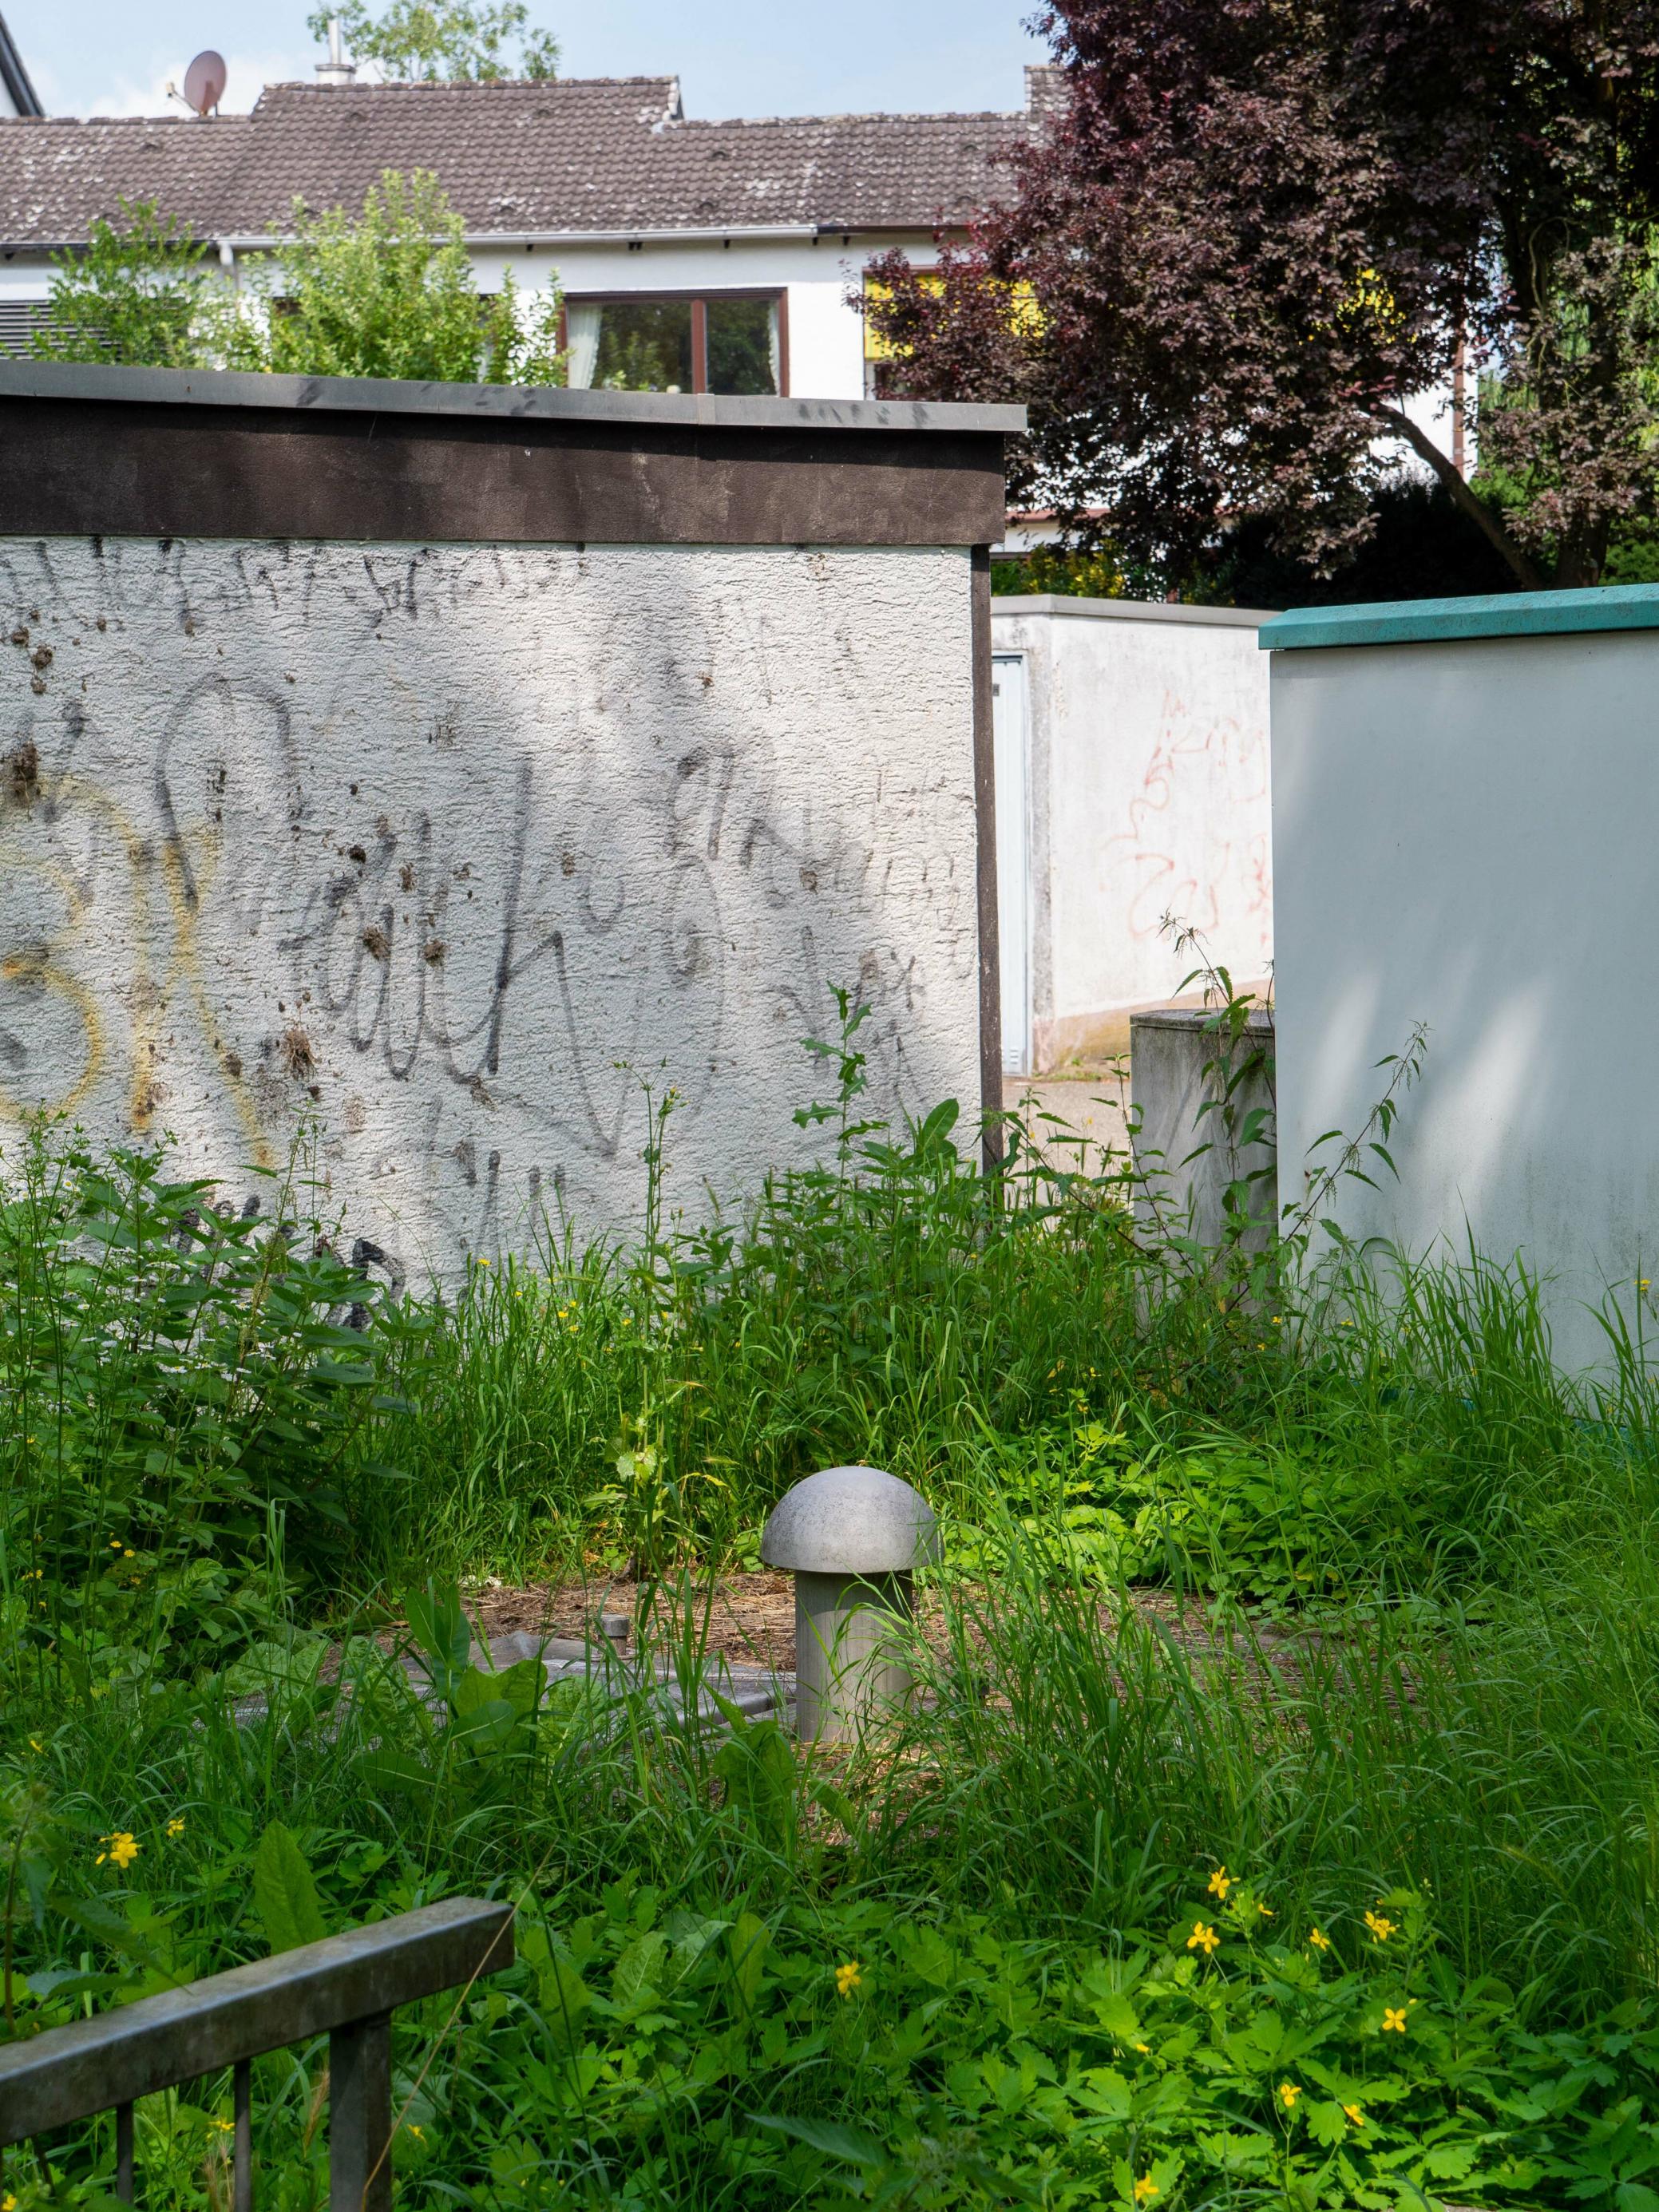 Am pilzförmigen Belüftungsstutzen ist einer der Brunnen hinter Garagenwänden zu erkennen, im Hintergrund Wohnhäuser